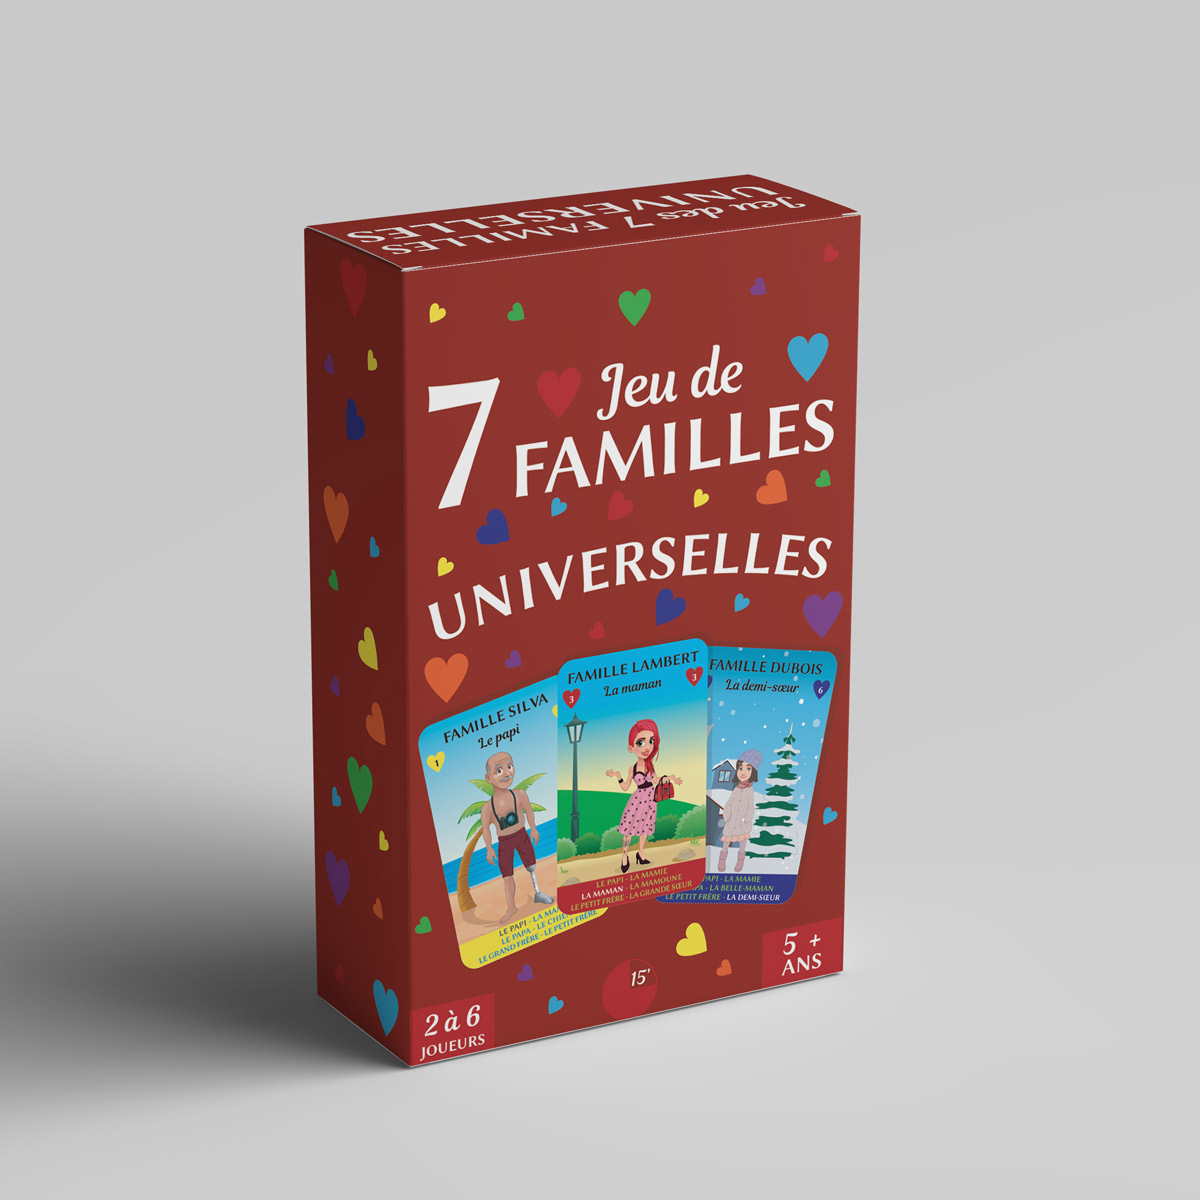 1 Jeu de7 FAMILLES UNIVERSELLES - Jeu de 7 familles Universelles